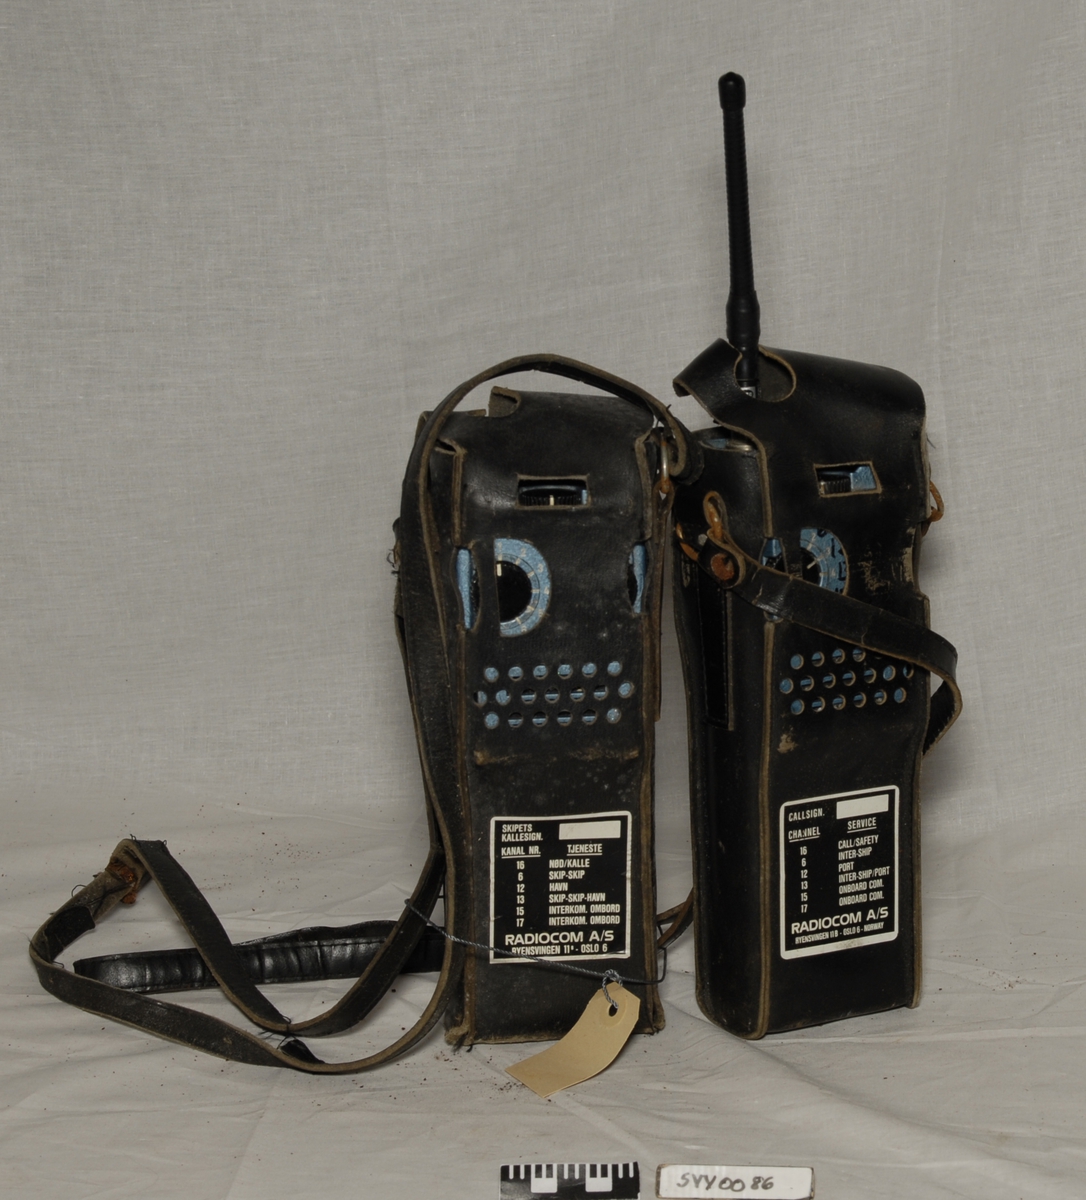 Betegnelse:VHF-samband
To rektangulære apparater med lærhylster og bærereim. Det er en antenne på den ene apparatet.